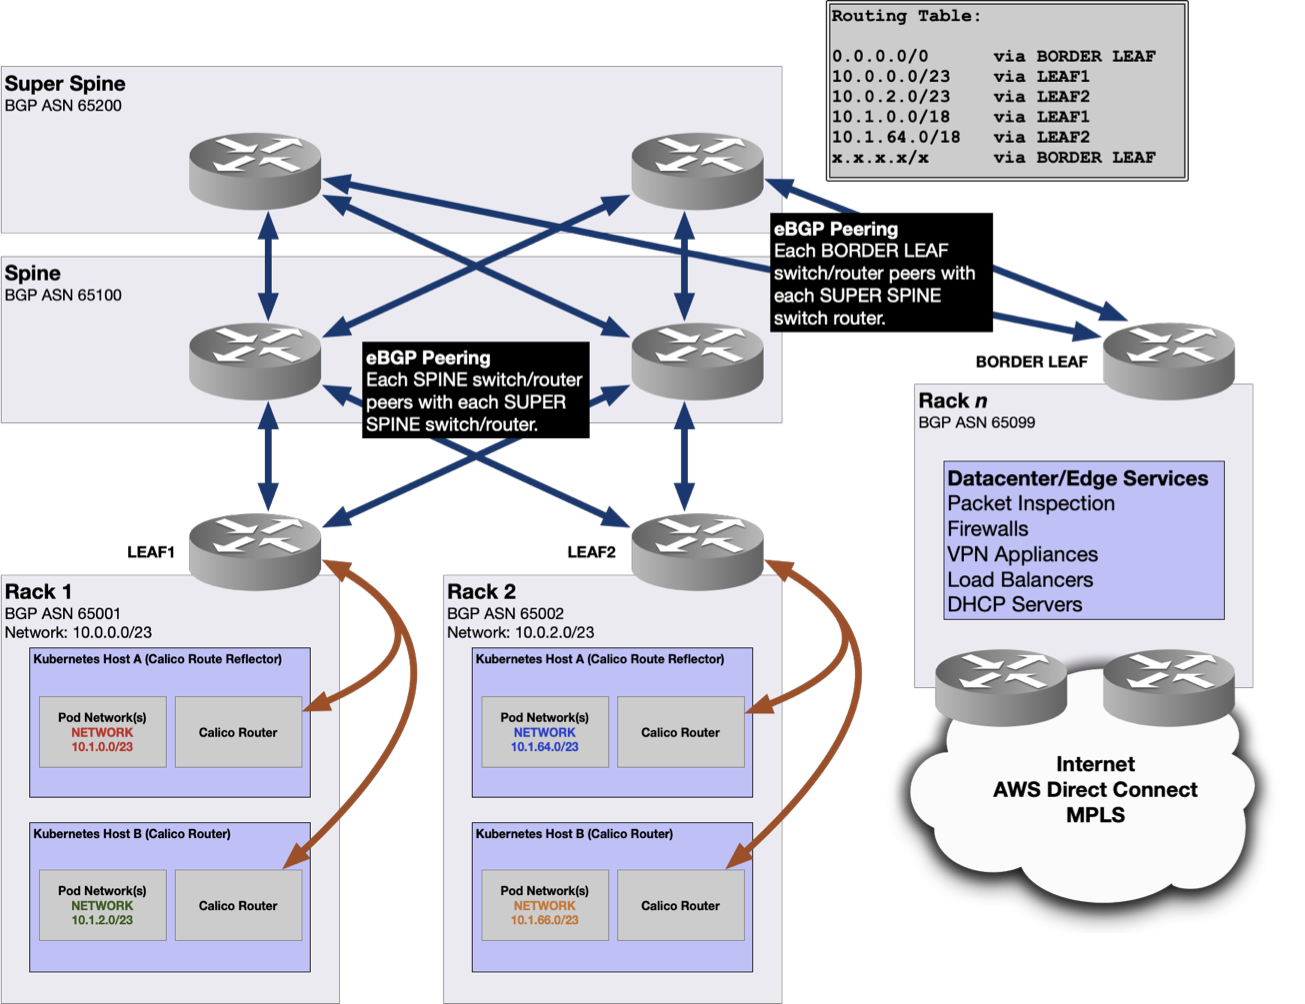 Funcionalidad de RHI para direcciones IP virtuales asociadas a un servidor virtual con equilibrio de carga en Citrix ADC